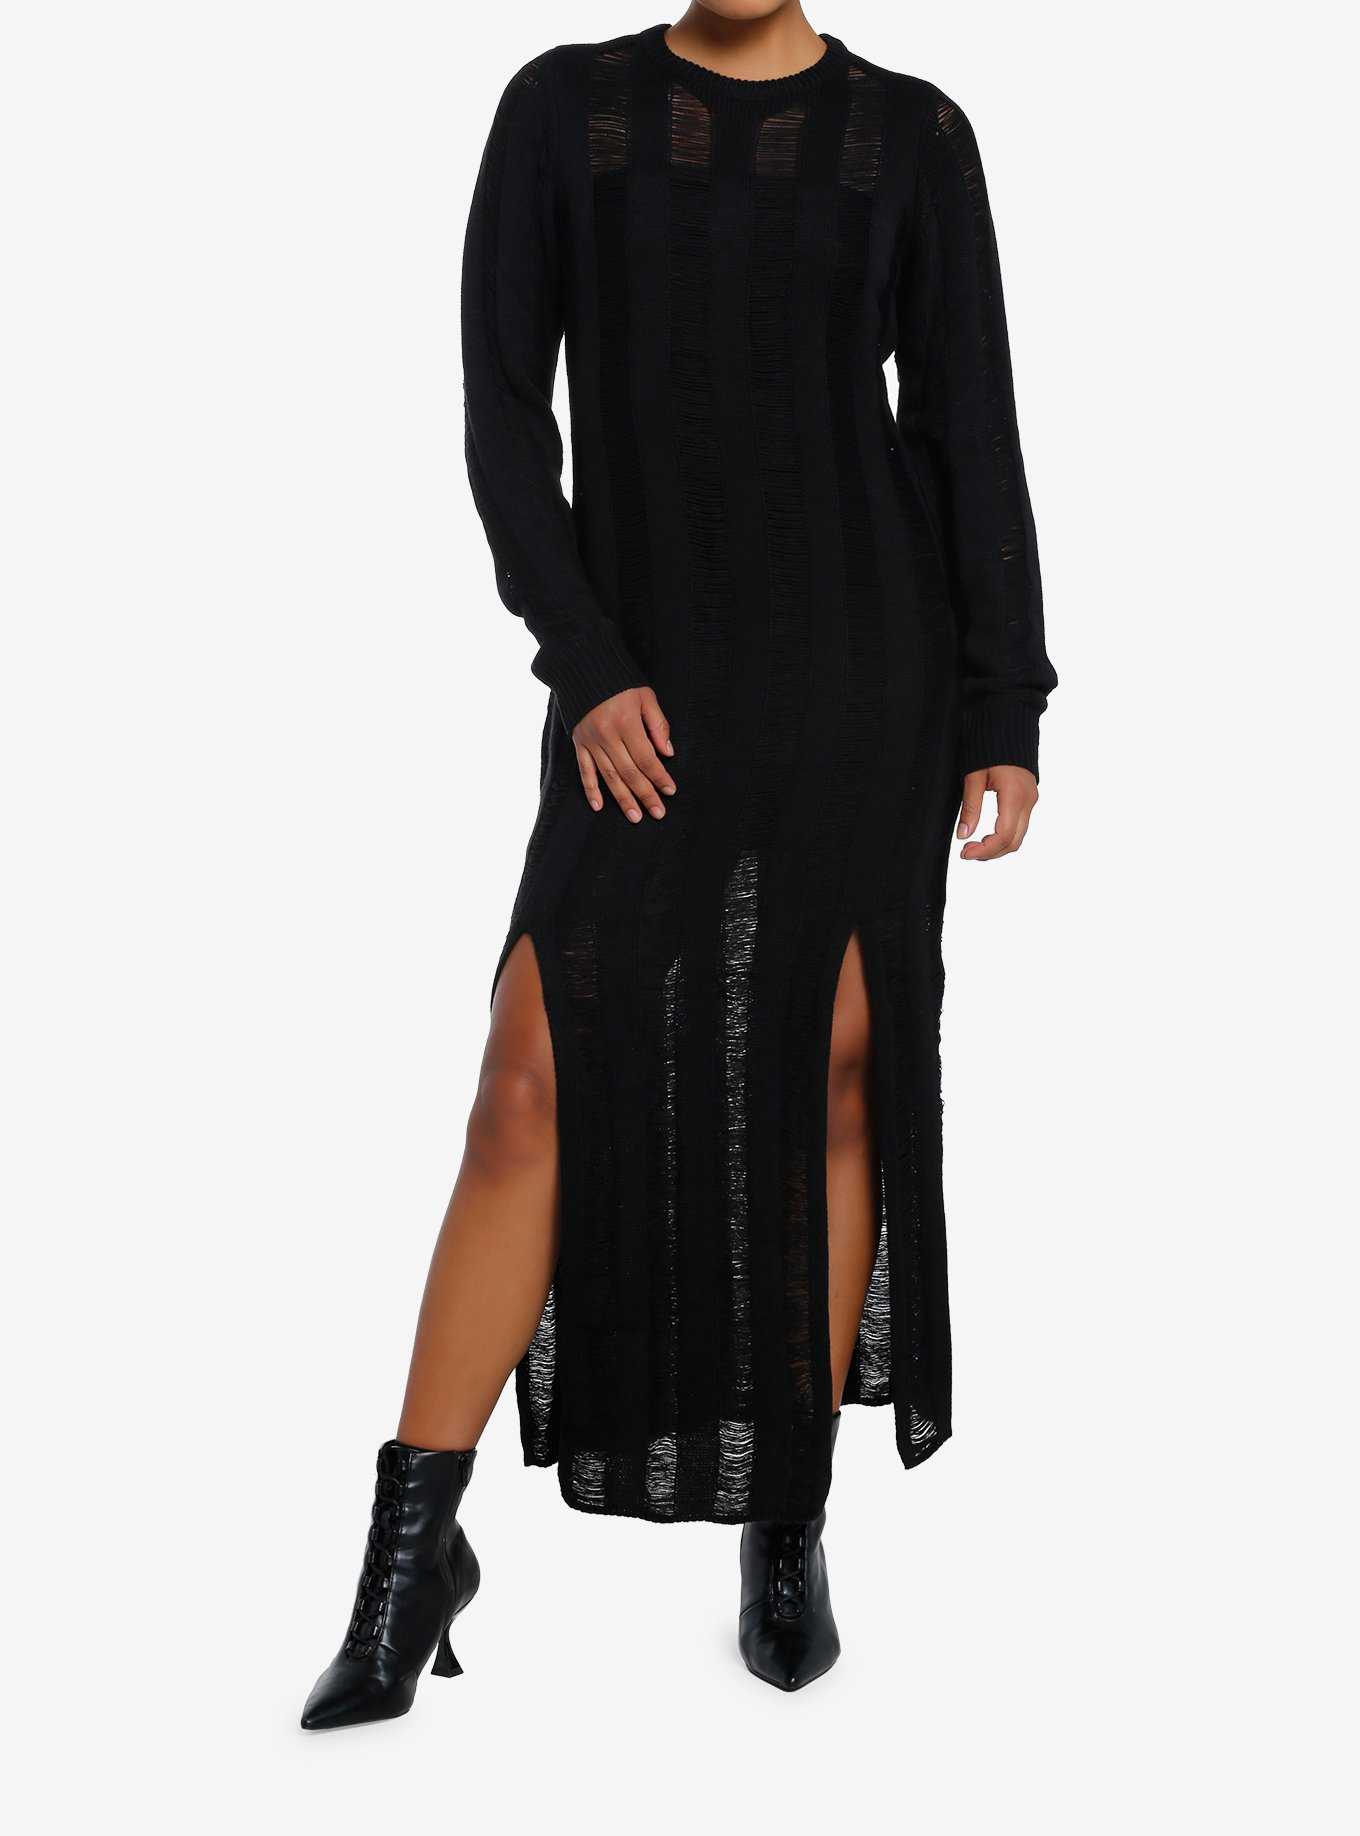 Black Dresses: Cute Black Dresses for Women